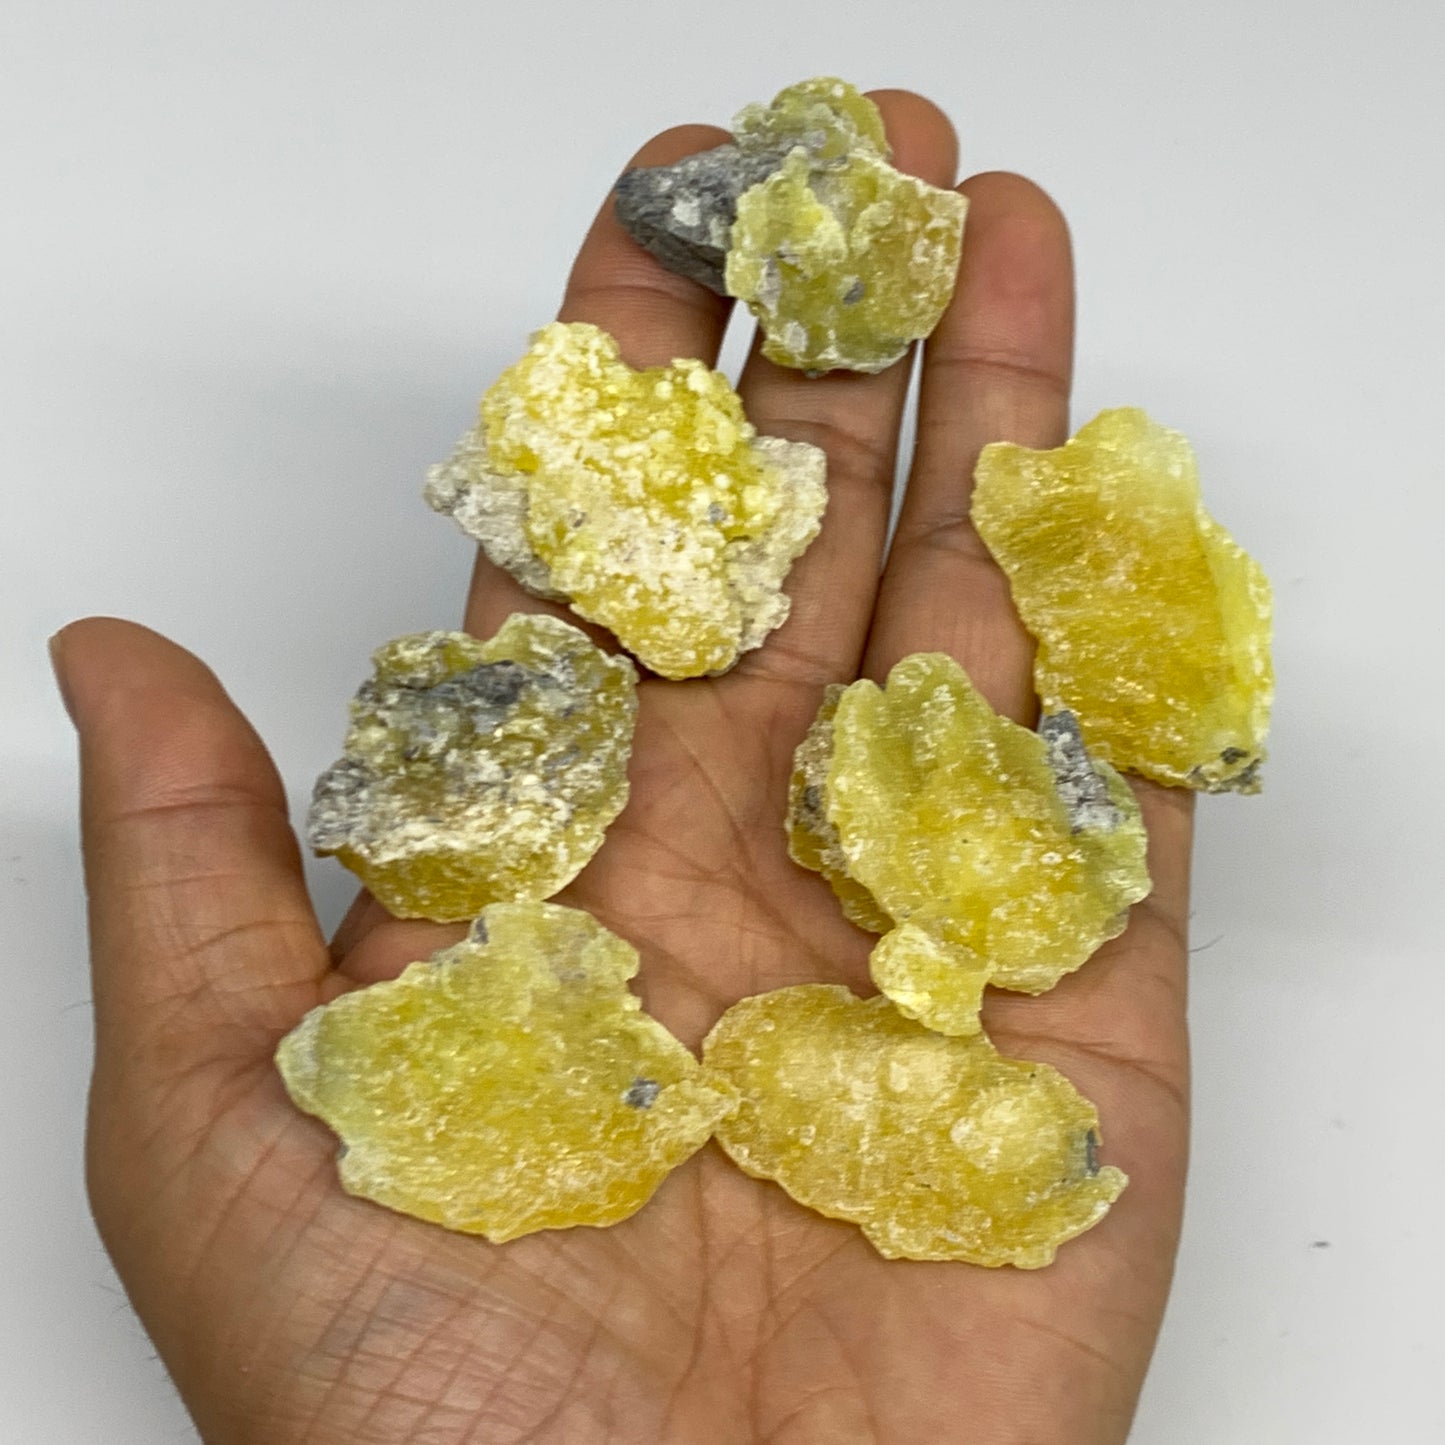 0.68 lbs, 1.2"-1.9", 36pcs, Brucite Crystal Minerals Specimens @Pakistan, B30154